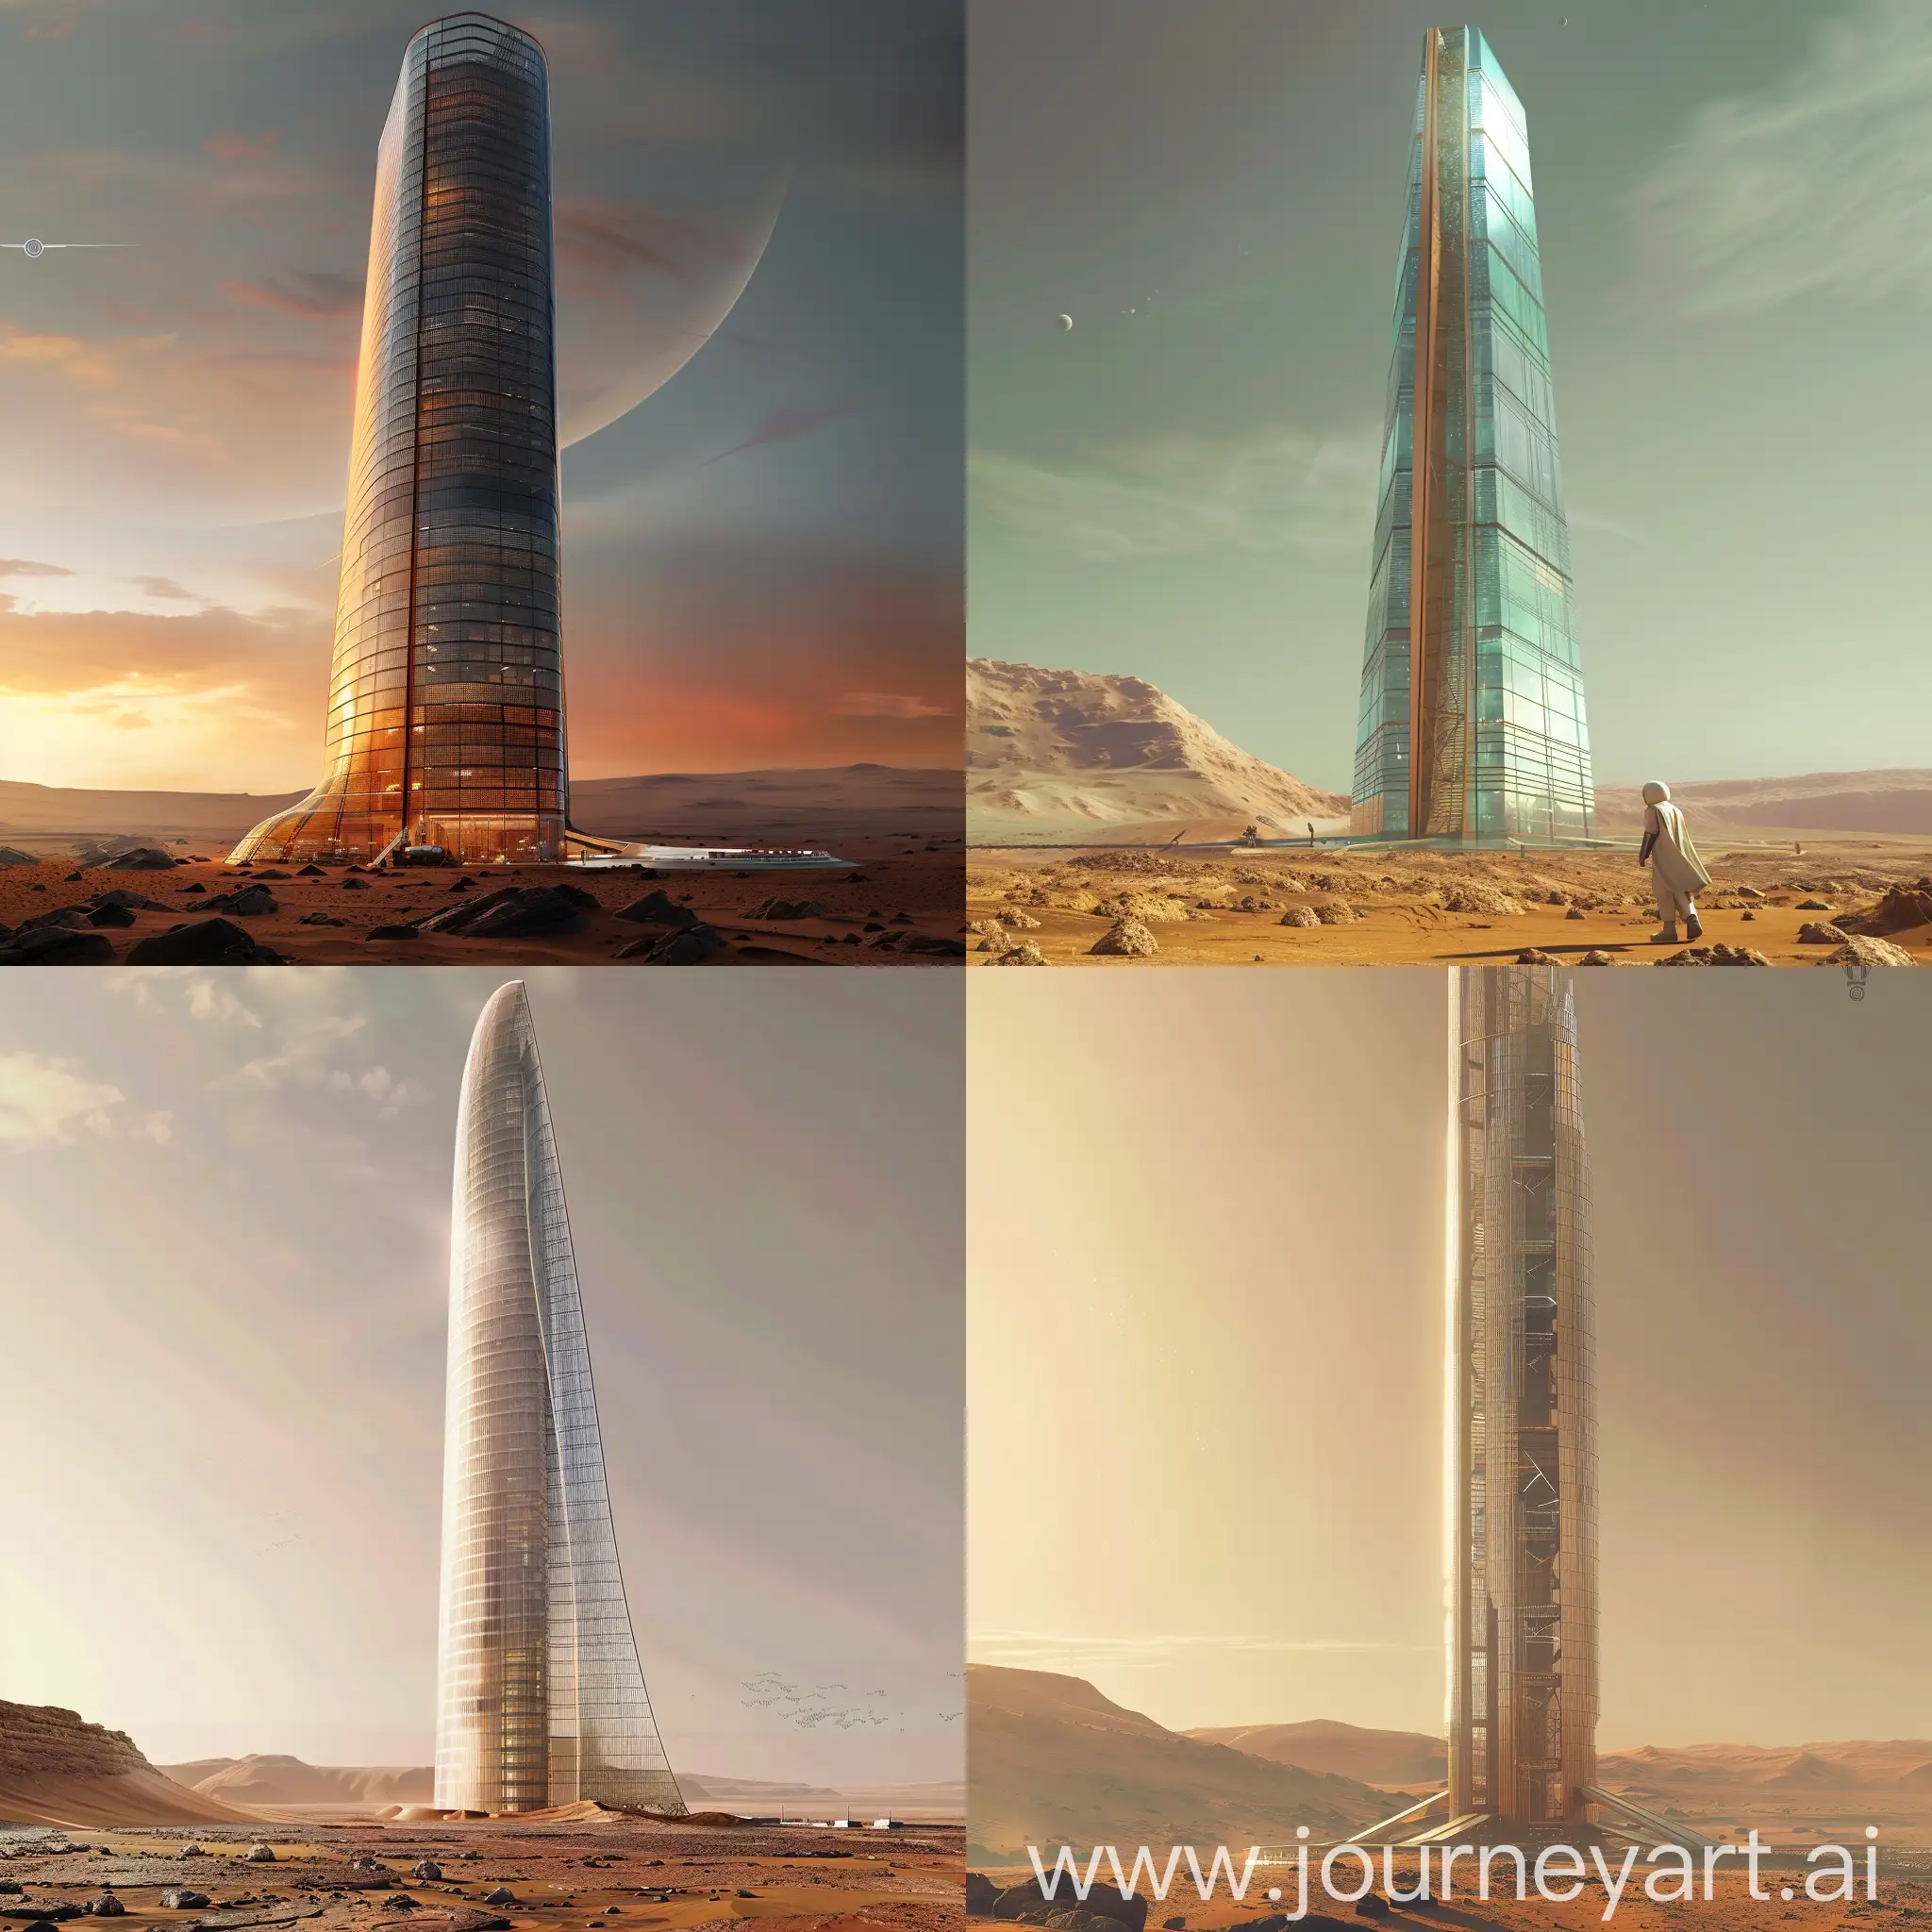 Futuristic-Glass-Skyscraper-on-Mars-Innovative-Architecture-in-Extraterrestrial-Setting